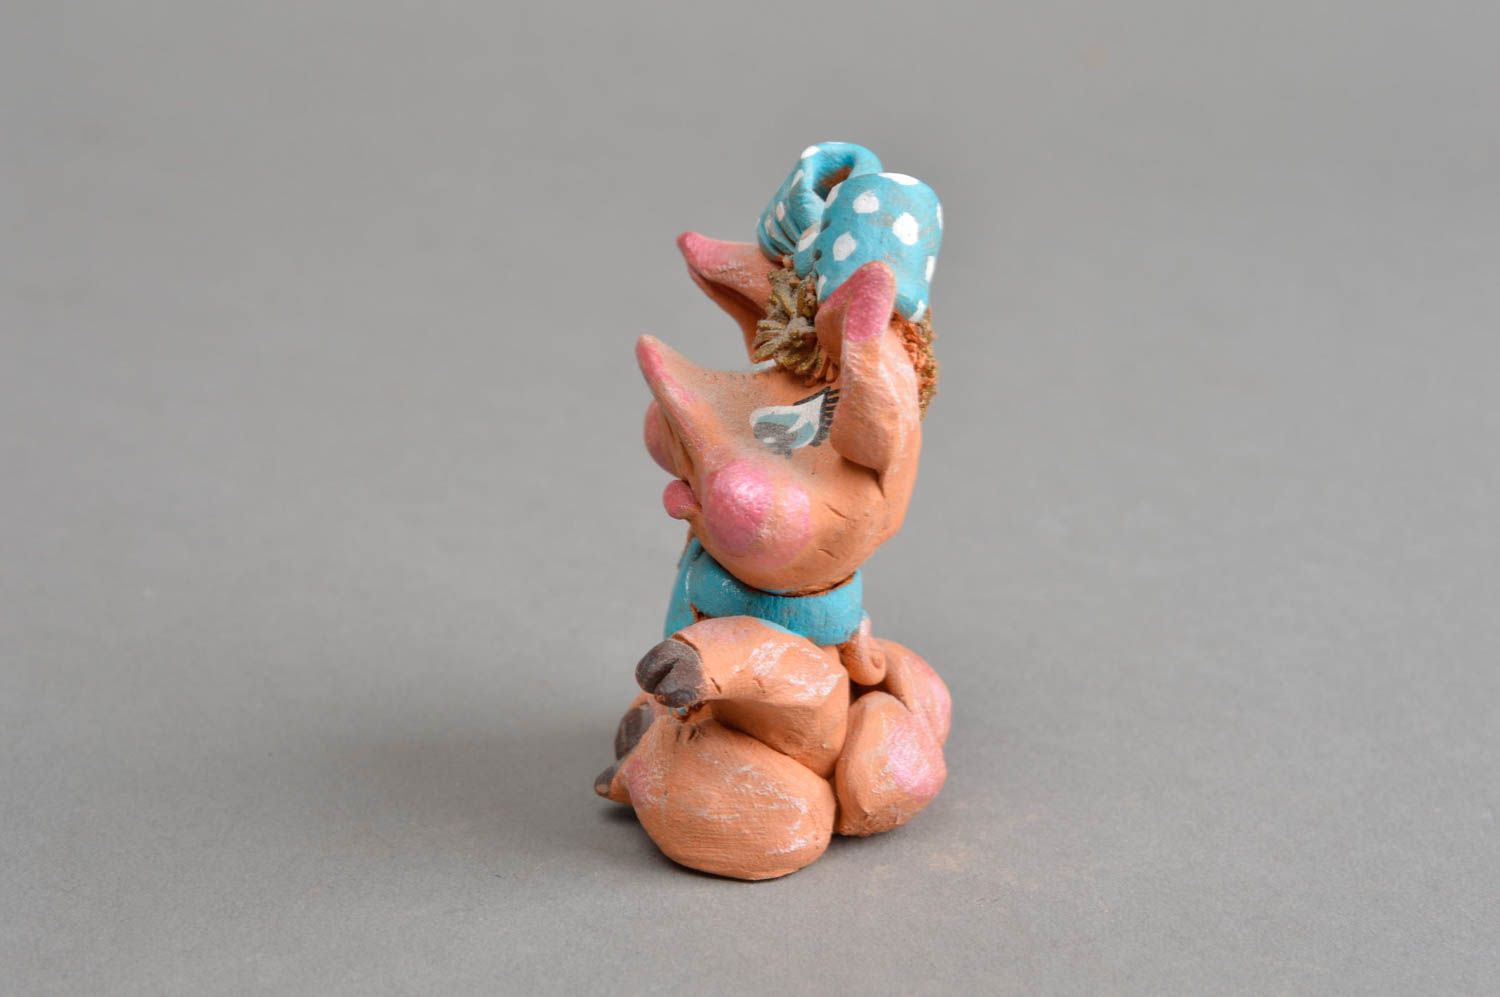 Авторский керамический сувенир ручной работы радостная свинка с голубым бантом фото 3